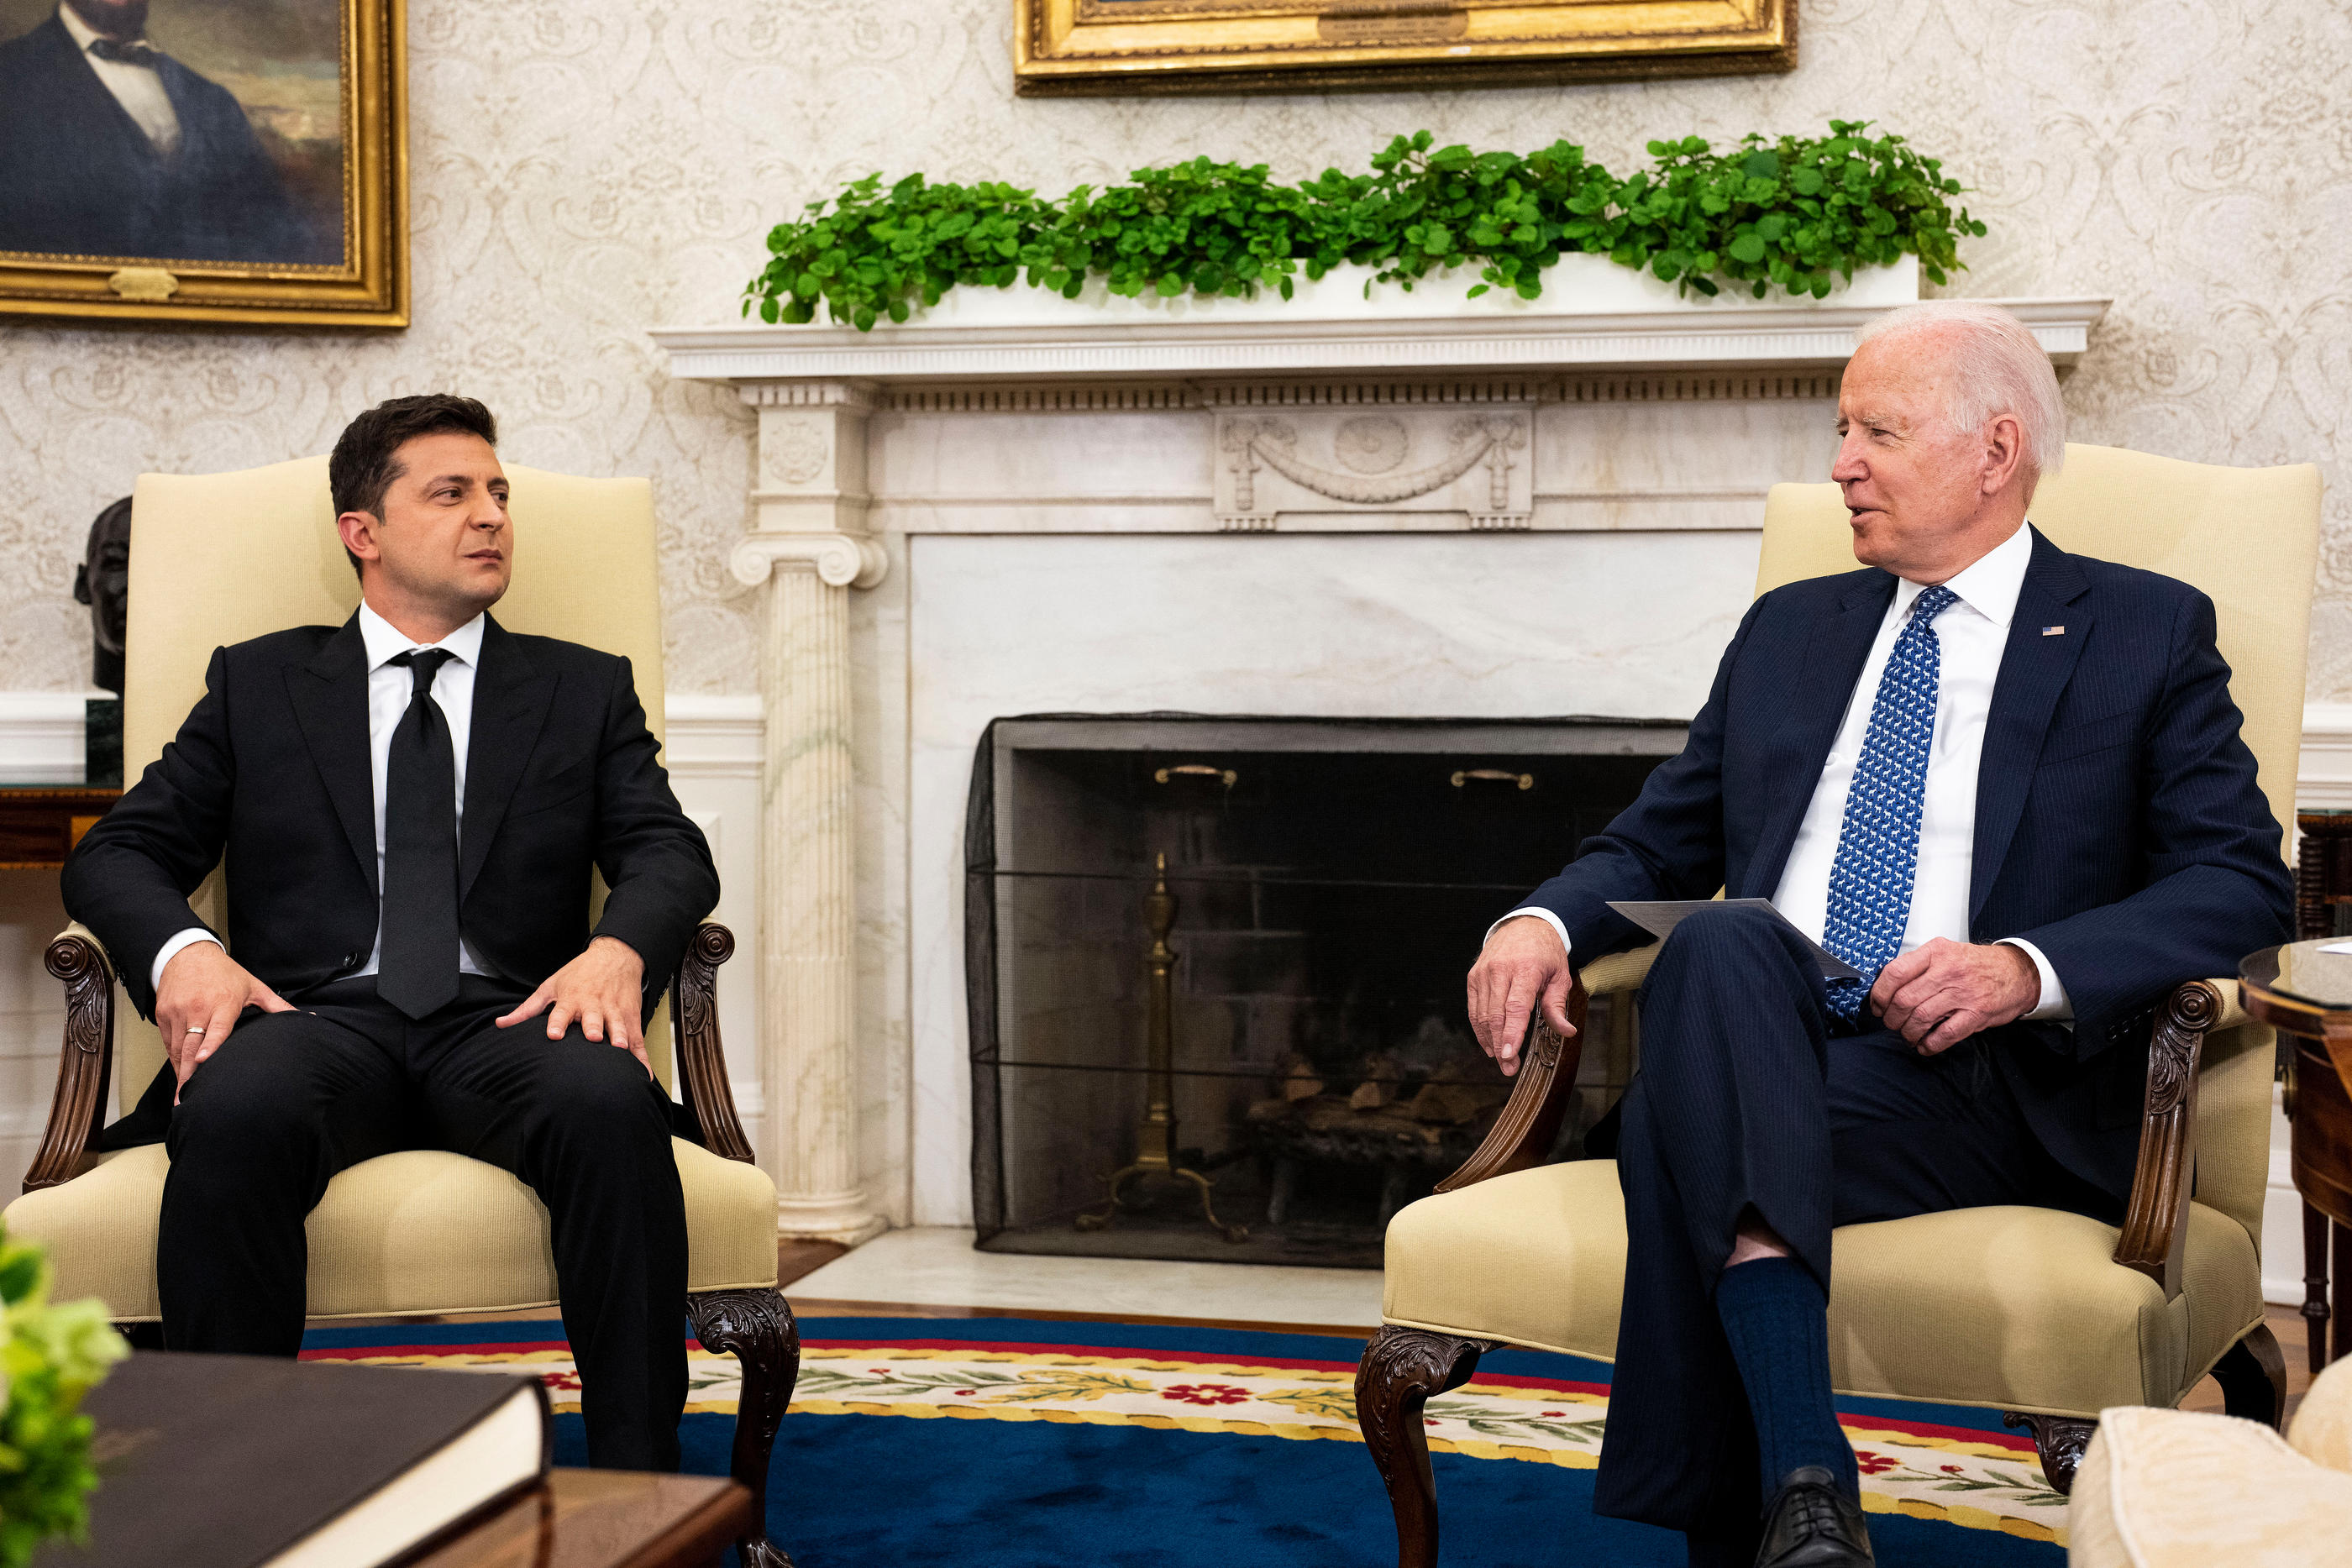 De plus en plus de Républicains critiquent la politique d'aide économique en faveur de l'Ukraine de Joe Biden (ici avec le président Volodymyr Zelensky en septembre 2021 à la Maison-Blanche). AFP/Brendan Smialowski